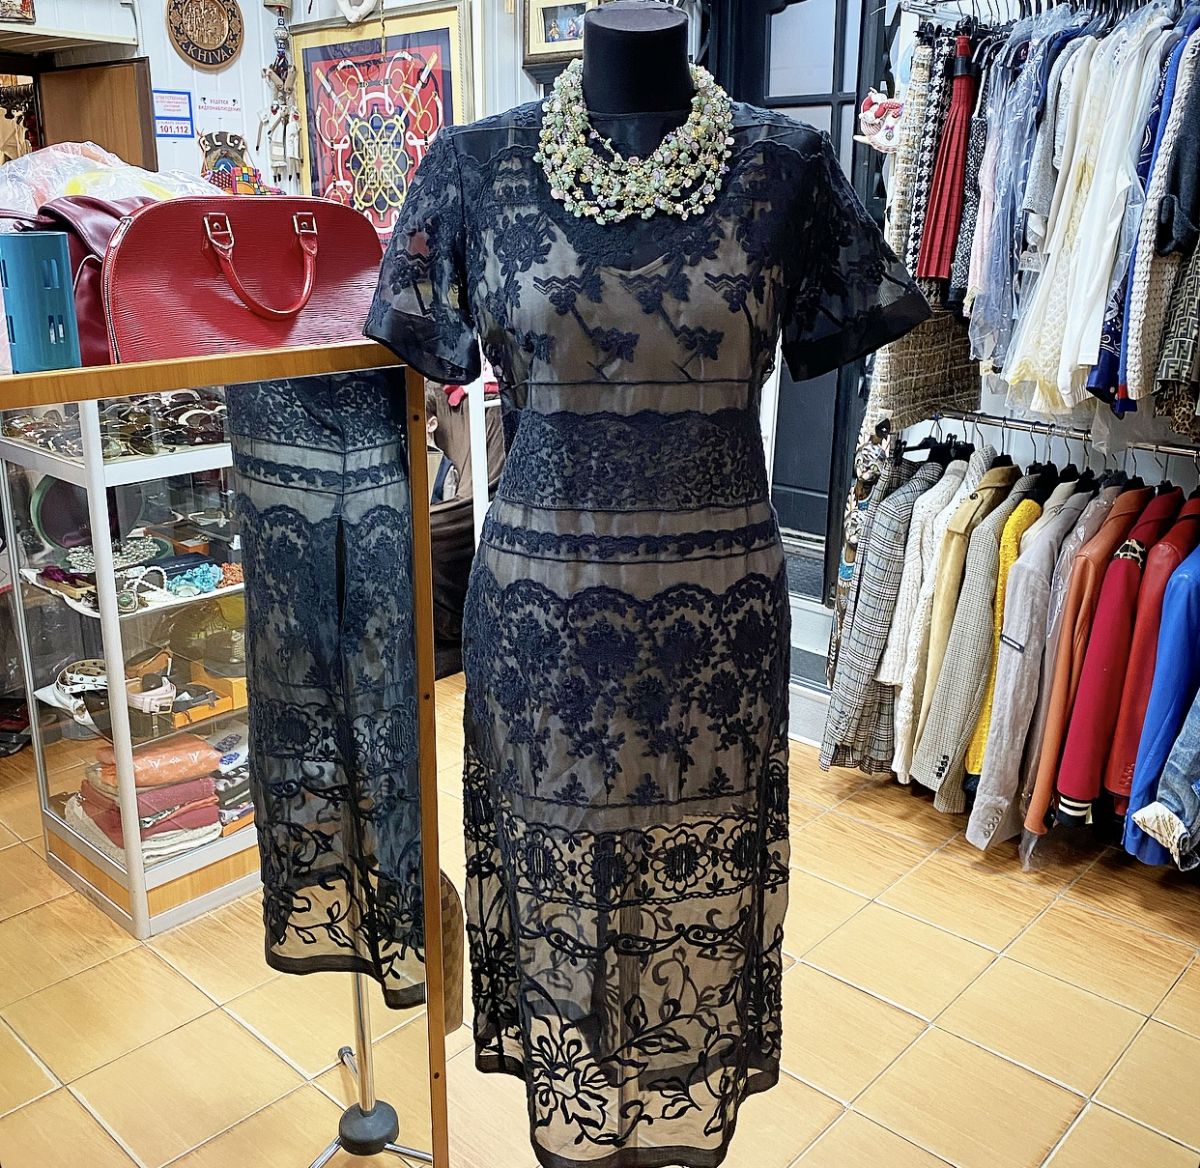 
Платье / вышивка / N21 размер 42 цена 12 308 руб 